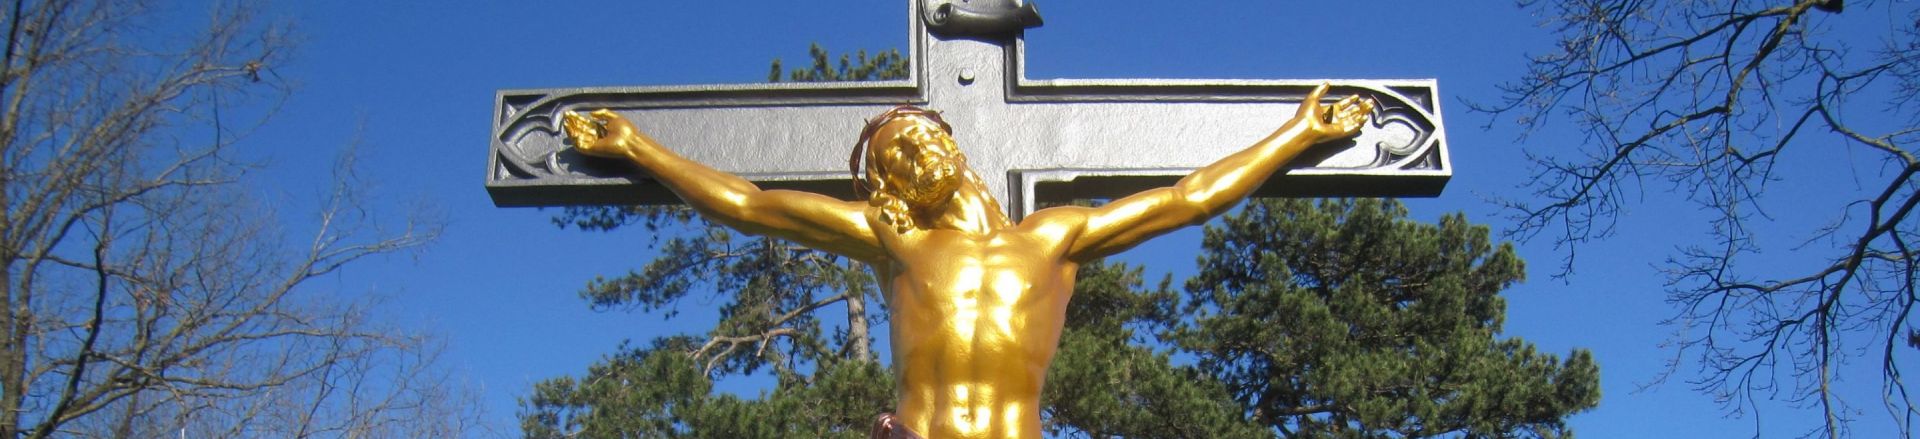 Restauration Heiligenfiguren, Goldbronze, Vergoldung